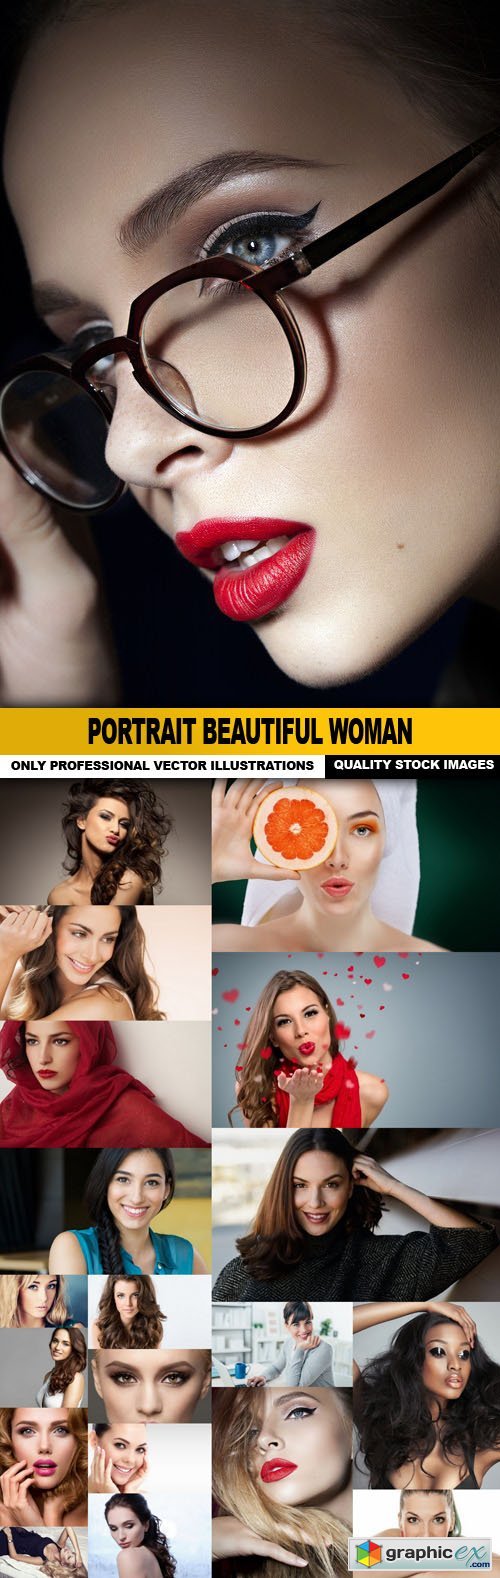 Portrait Beautiful Woman - 20 HQ Images